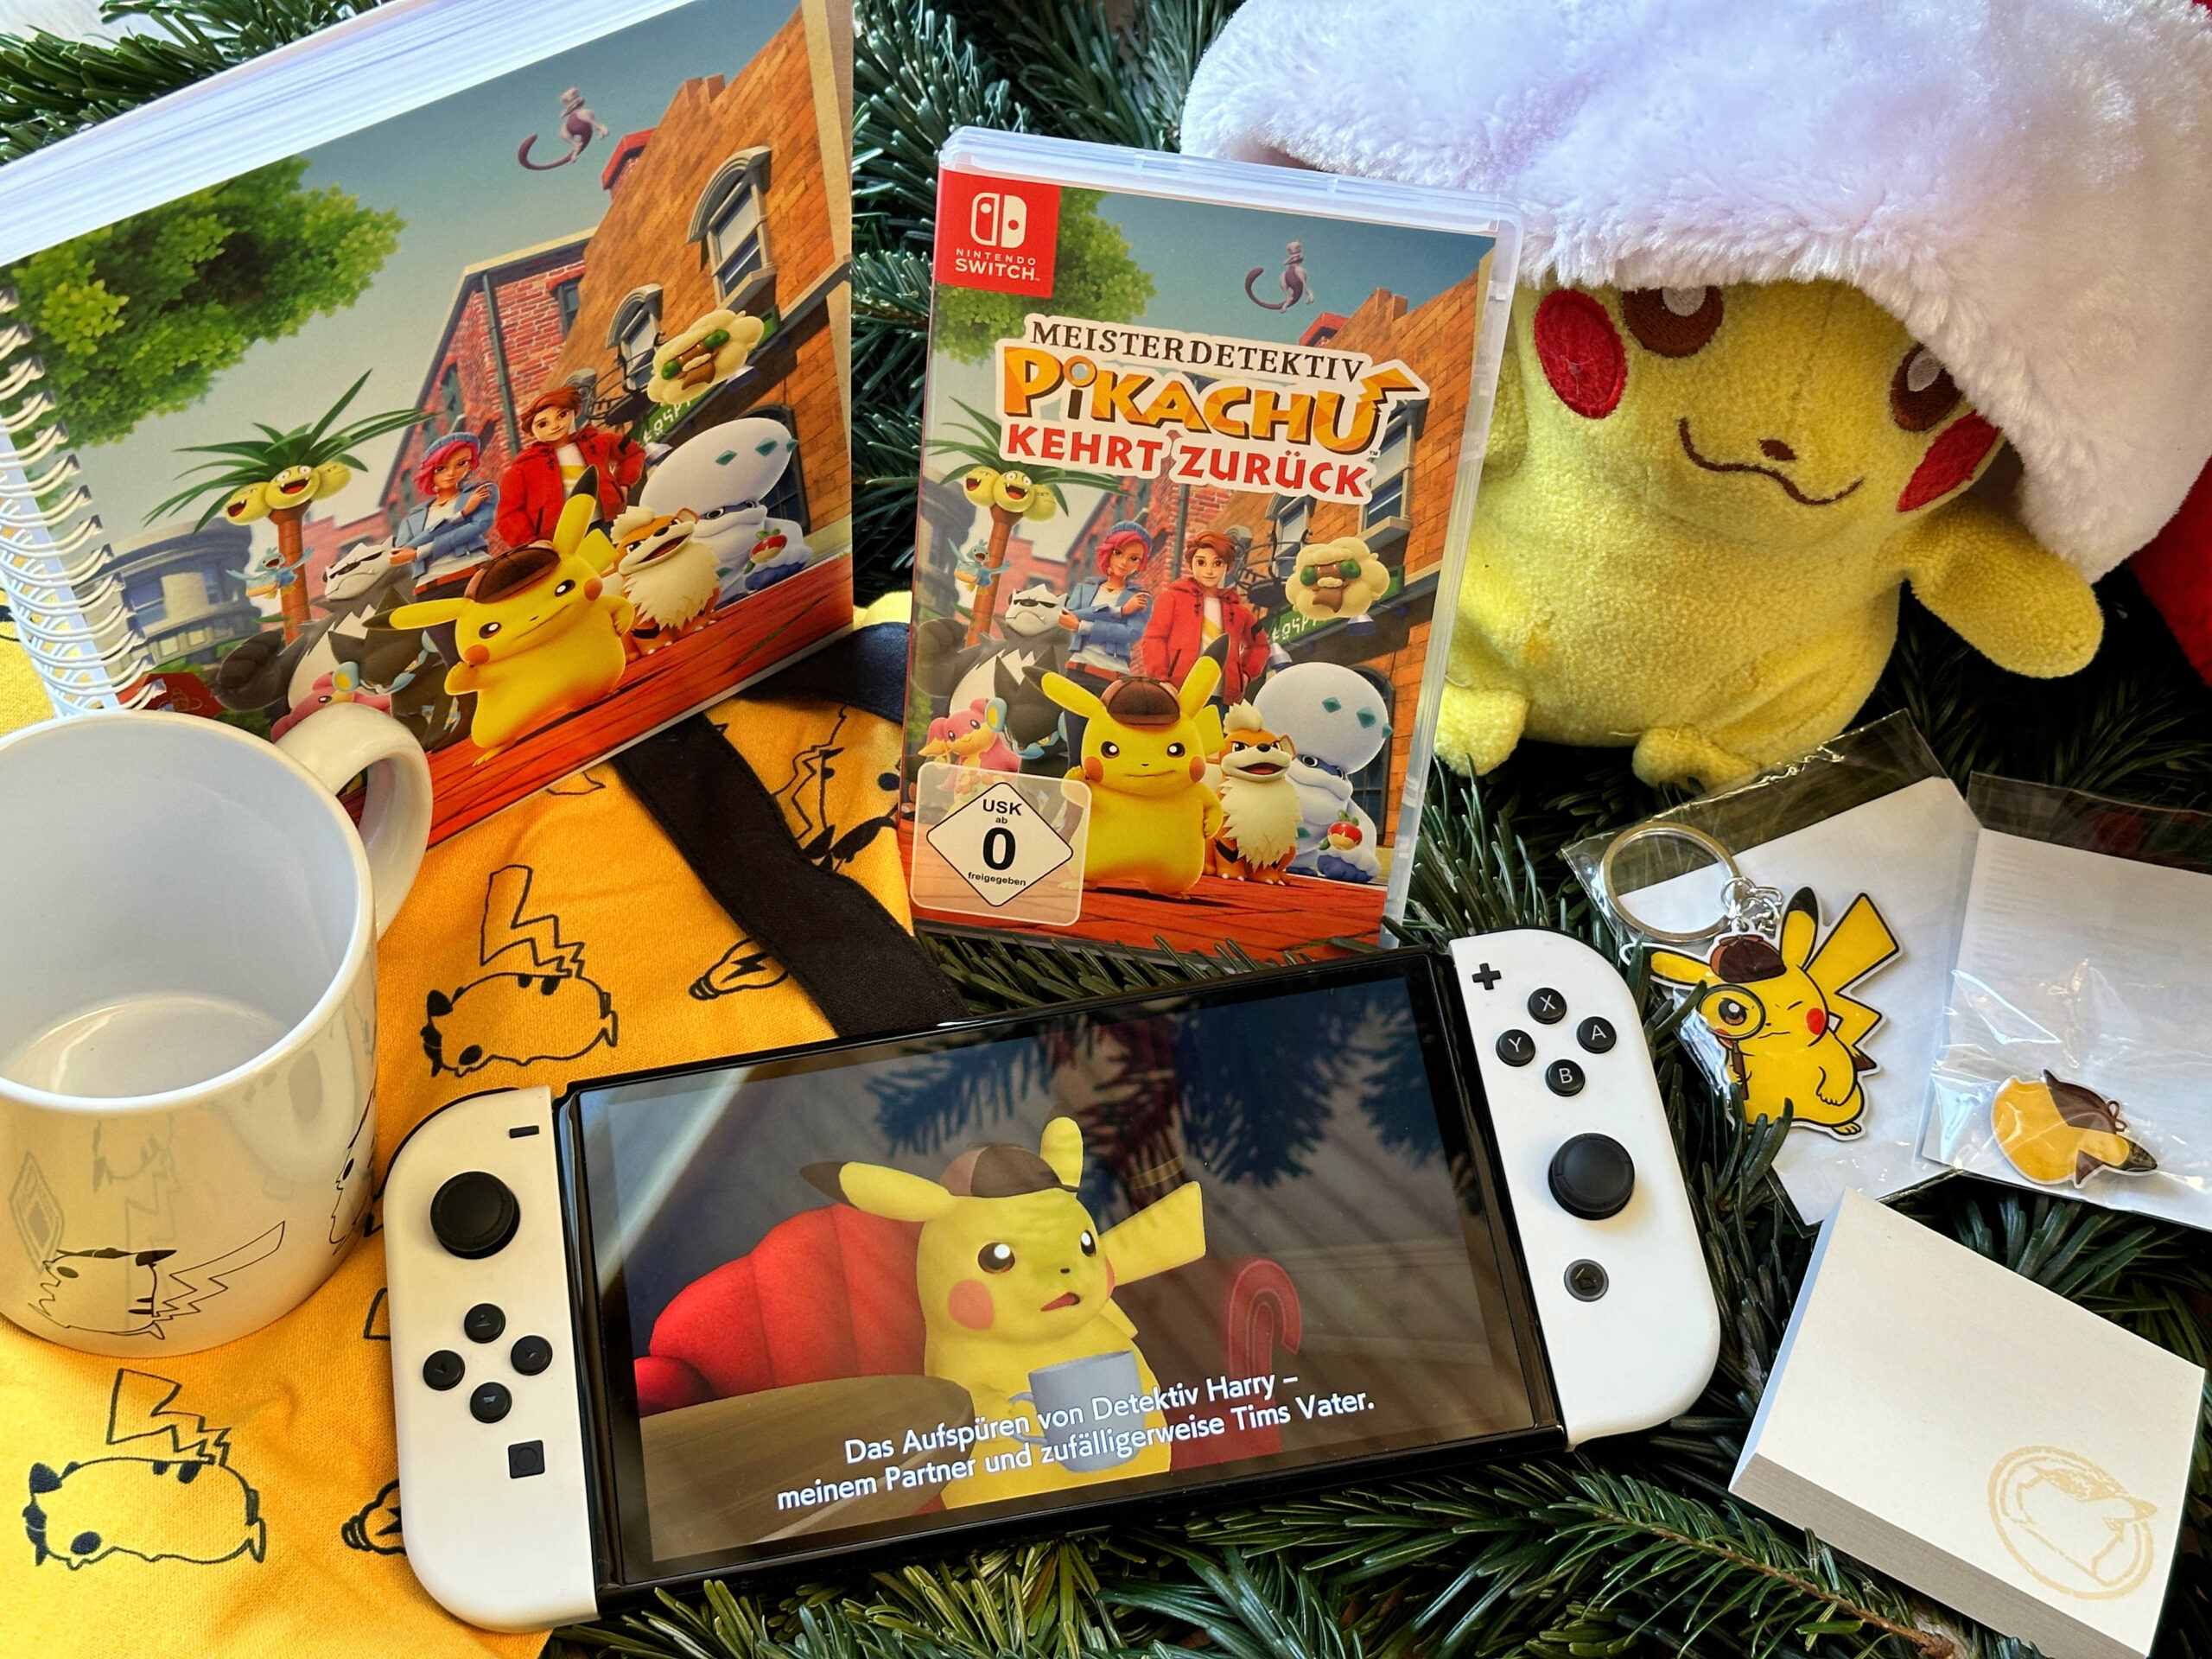 Weihnachtsgewinnspiel: Meisterdetektiv zurück Pikachu kehrt